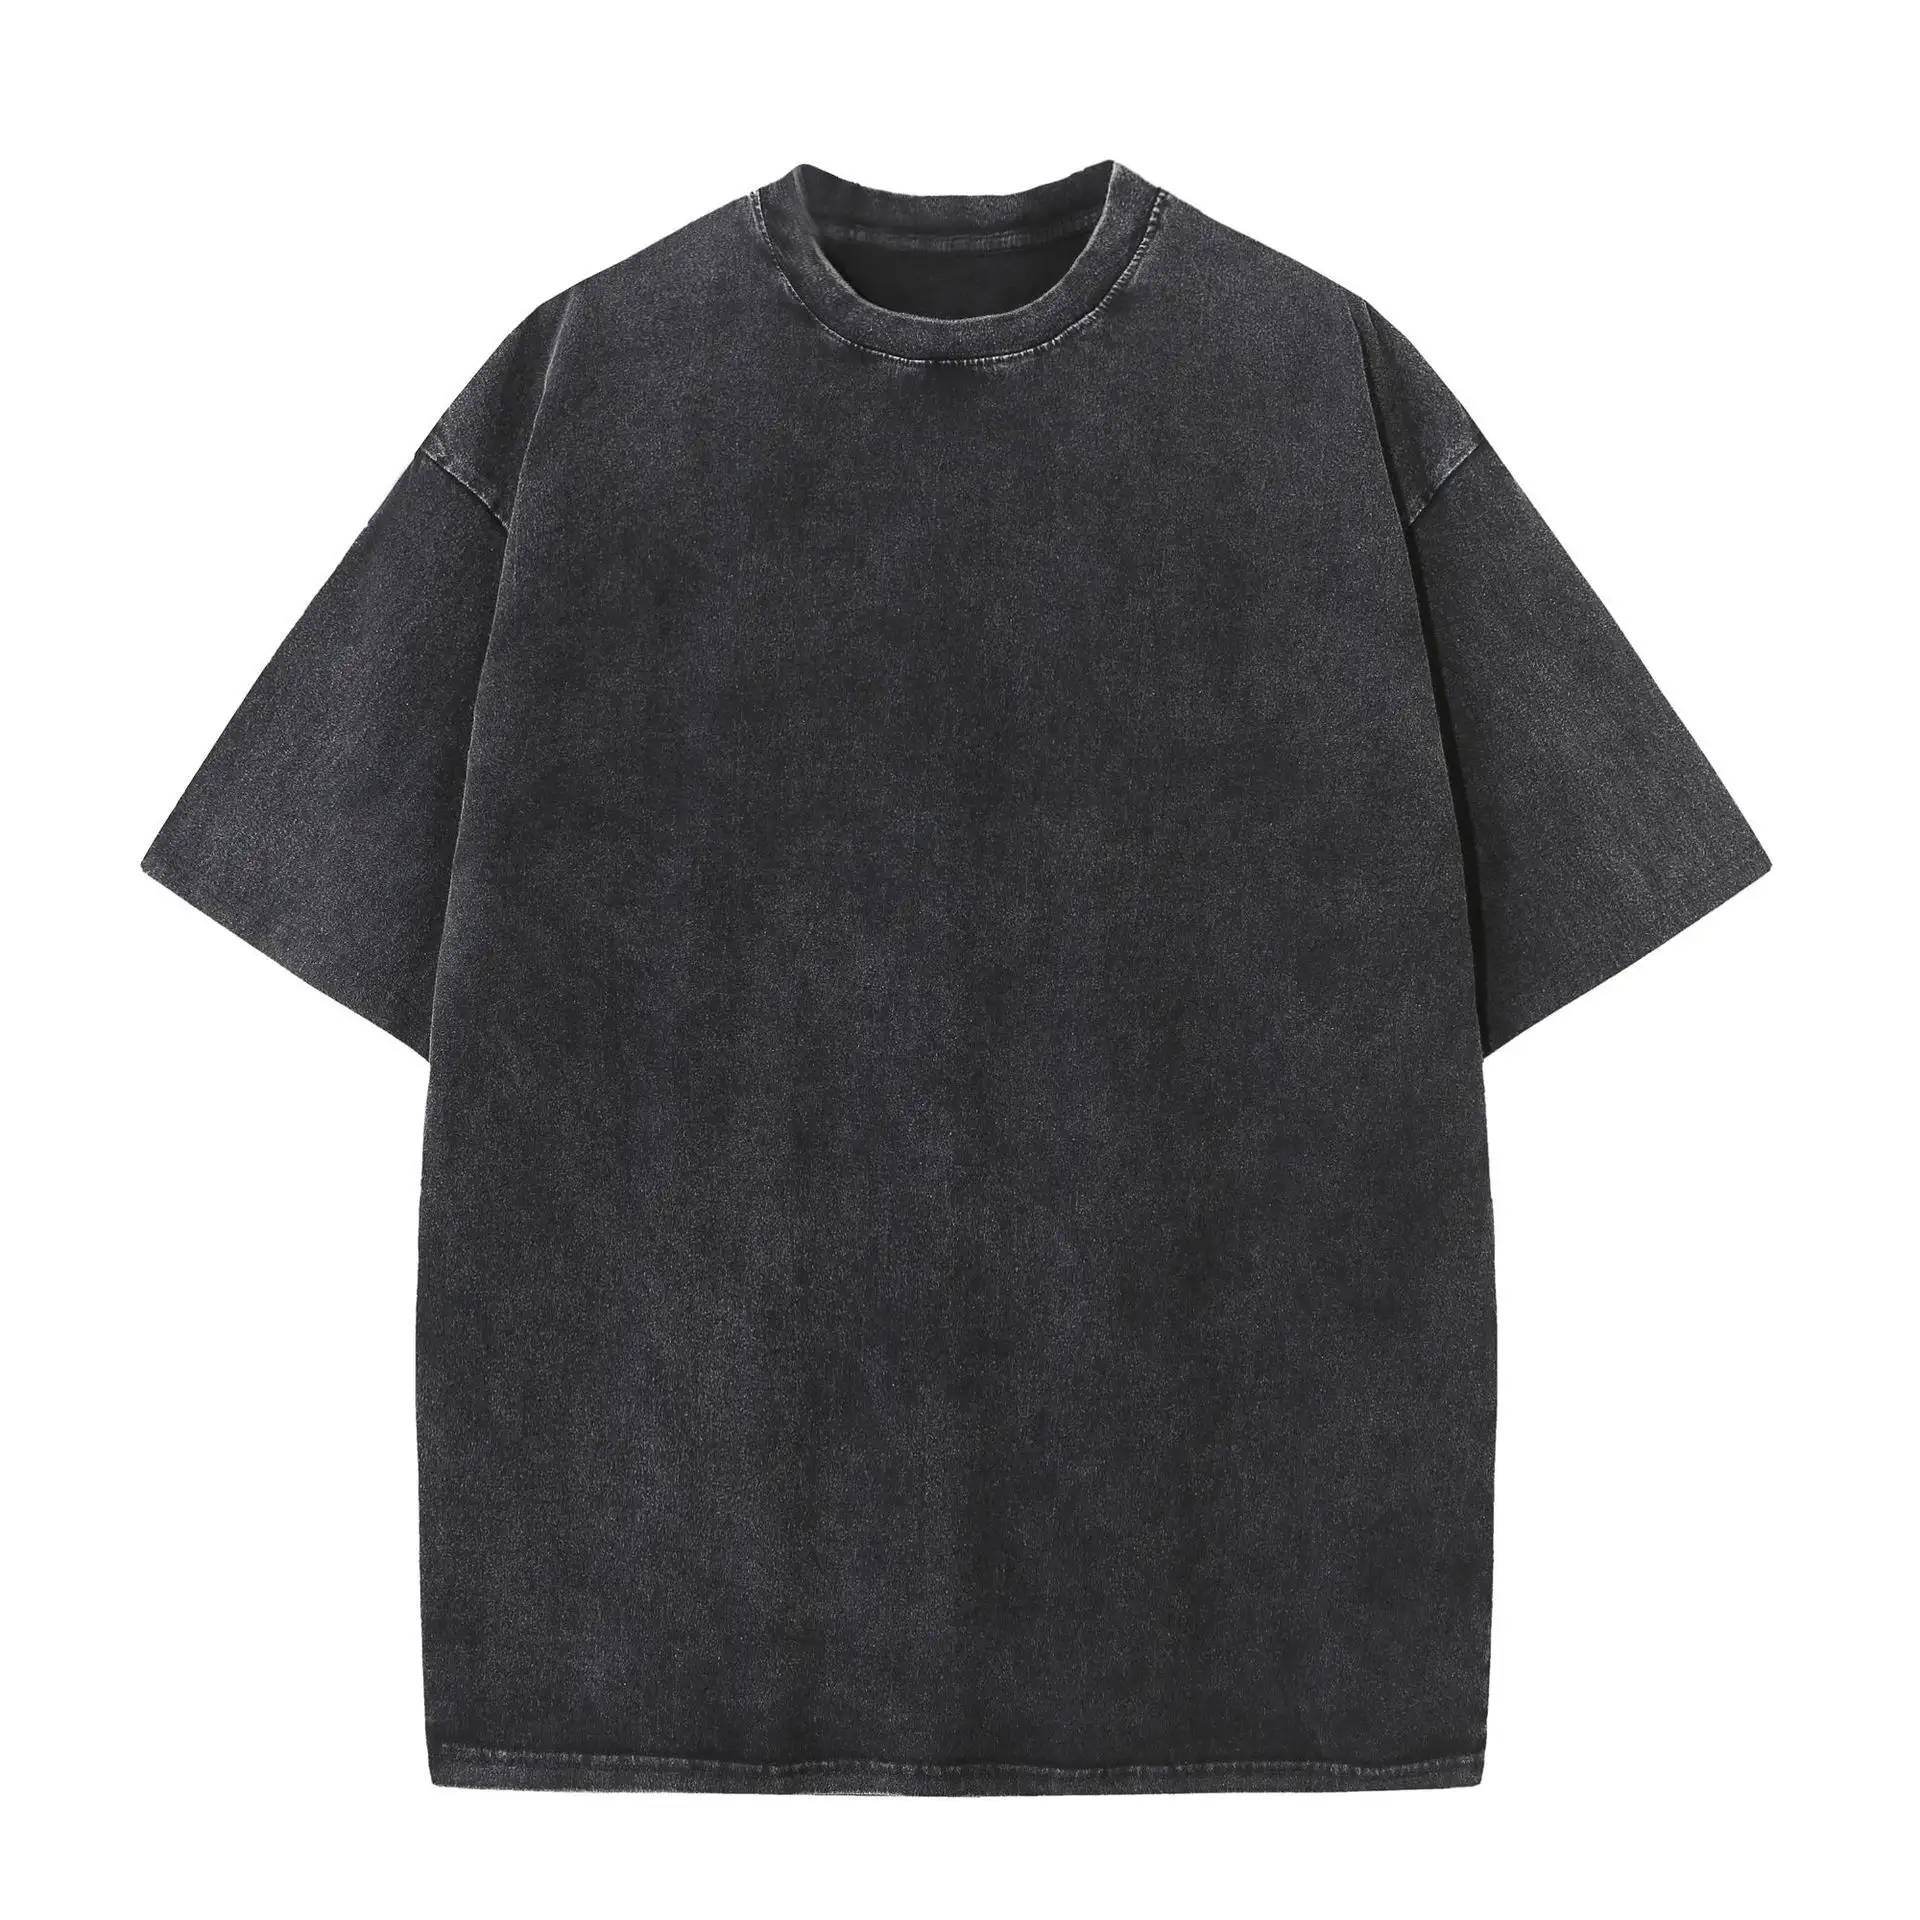 애시드 워시 빈티지 드롭 숄더 대형 T 셔츠 스트리트웨어 힙합 워시 로고가있는 무거운면 t 셔츠